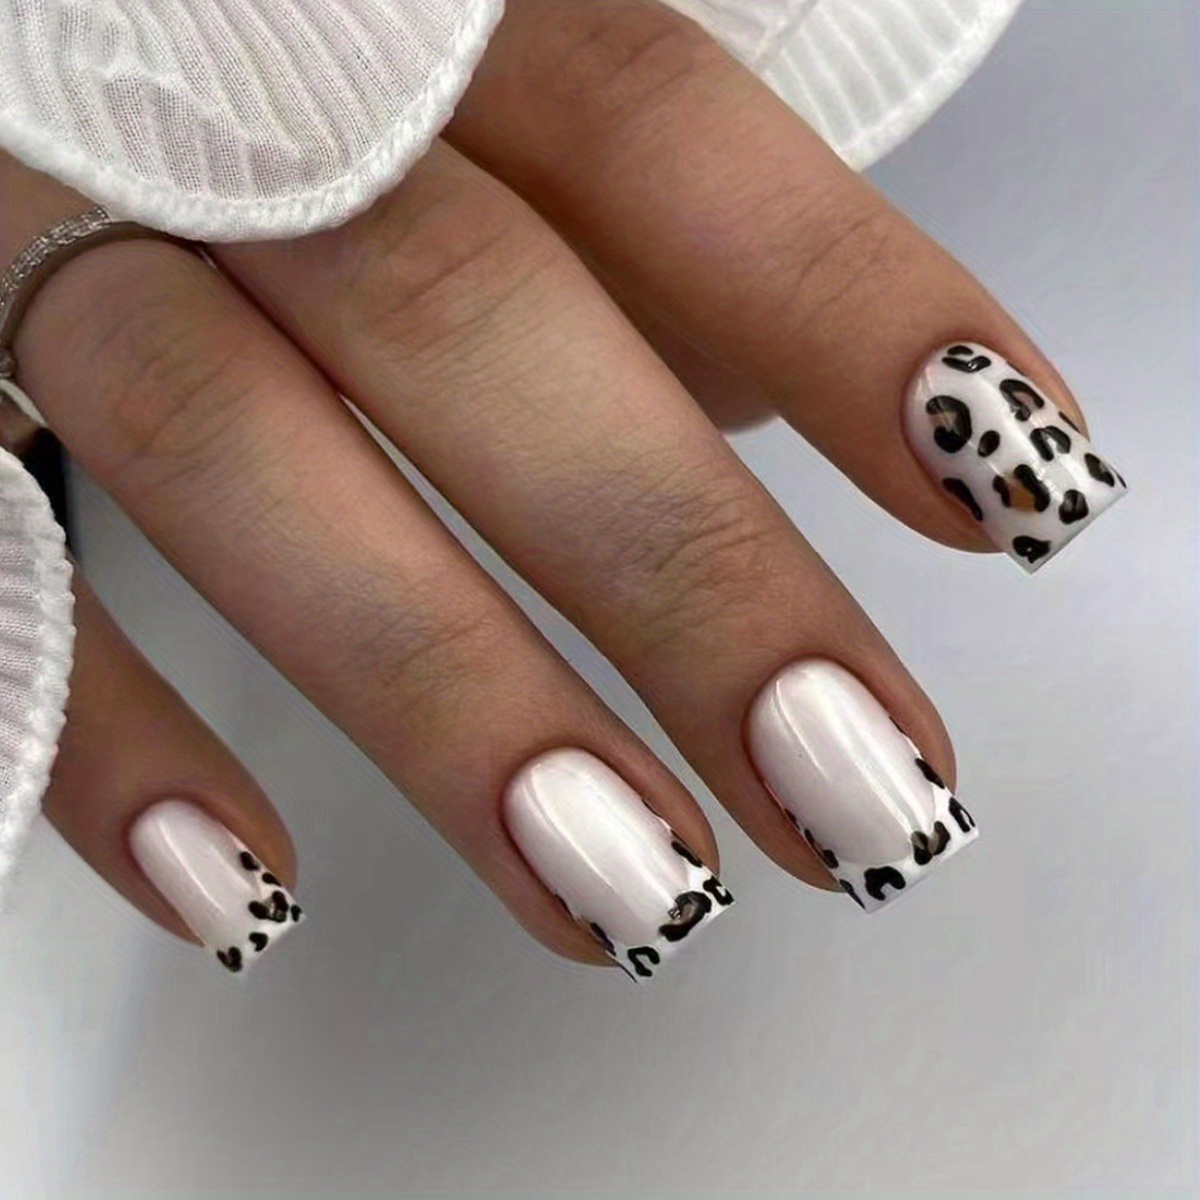 Leopard Print - Press On Nails